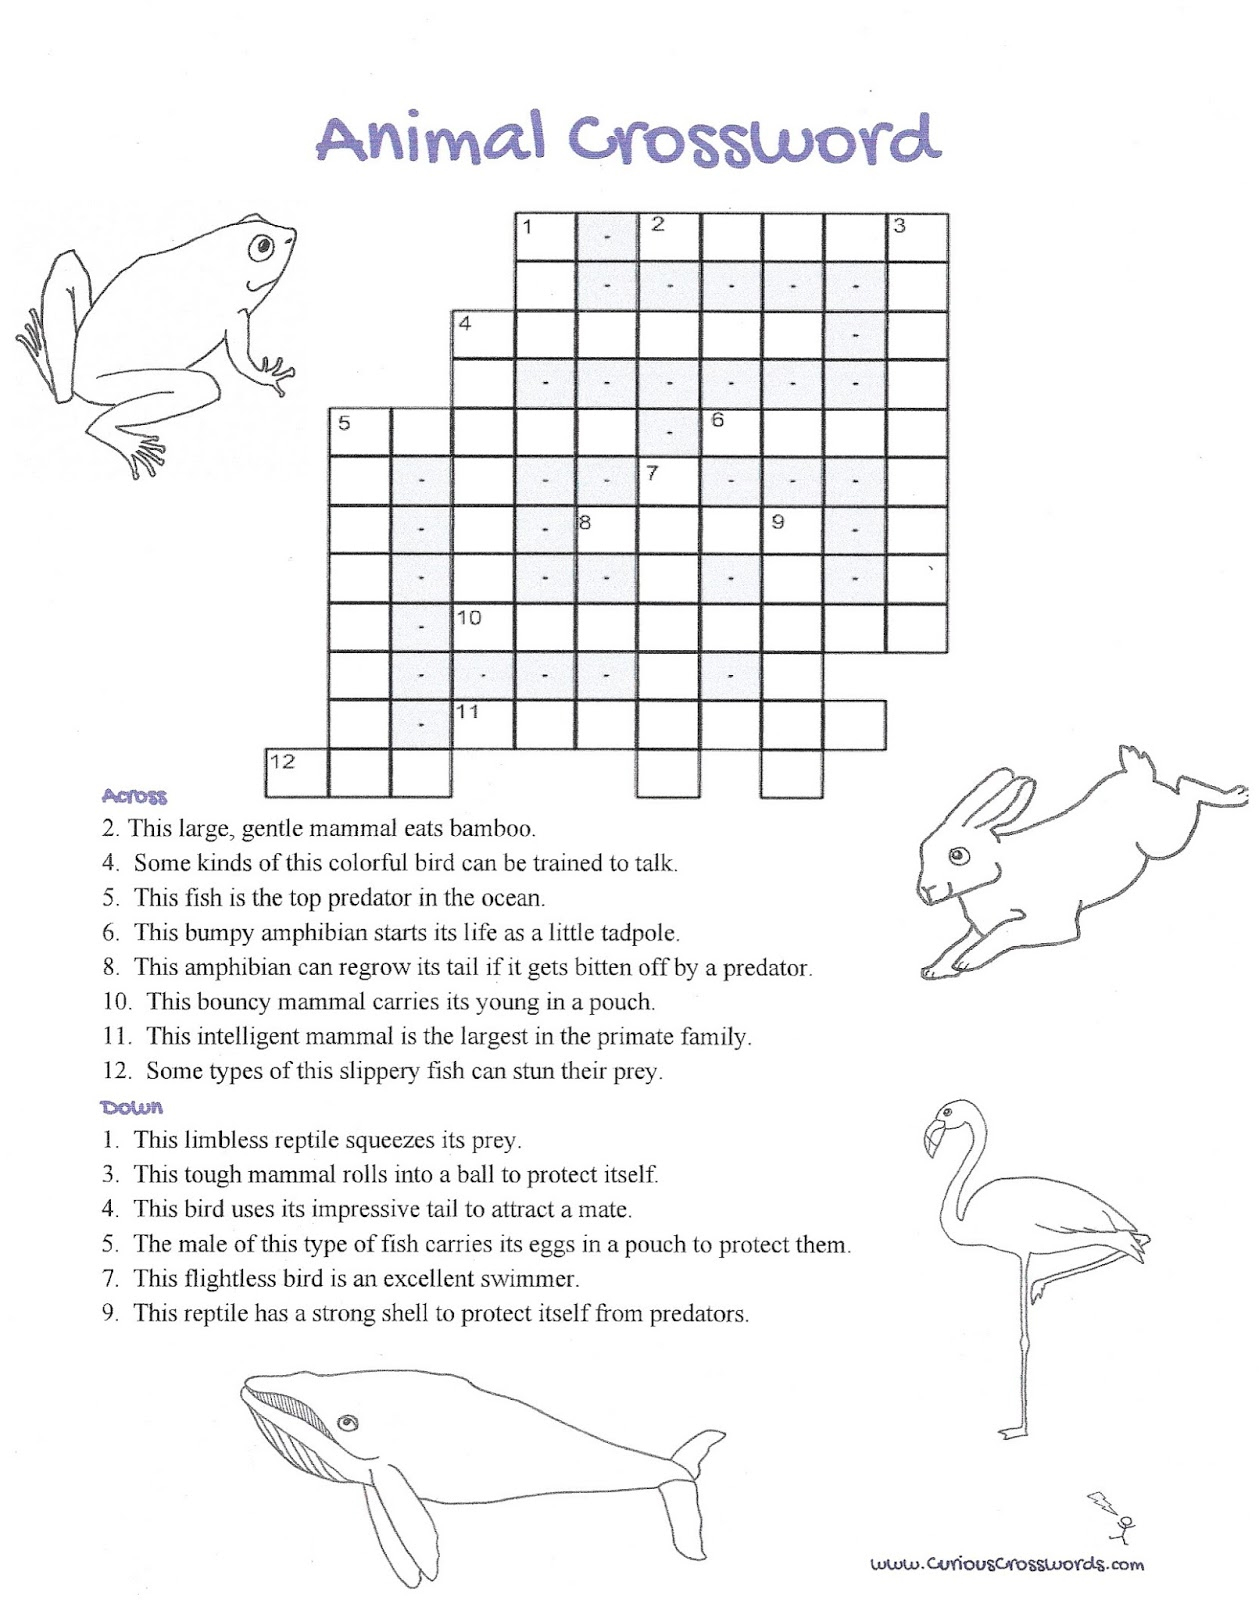 Wildlife Crossword Puzzle Printable | Printable Crossword ...